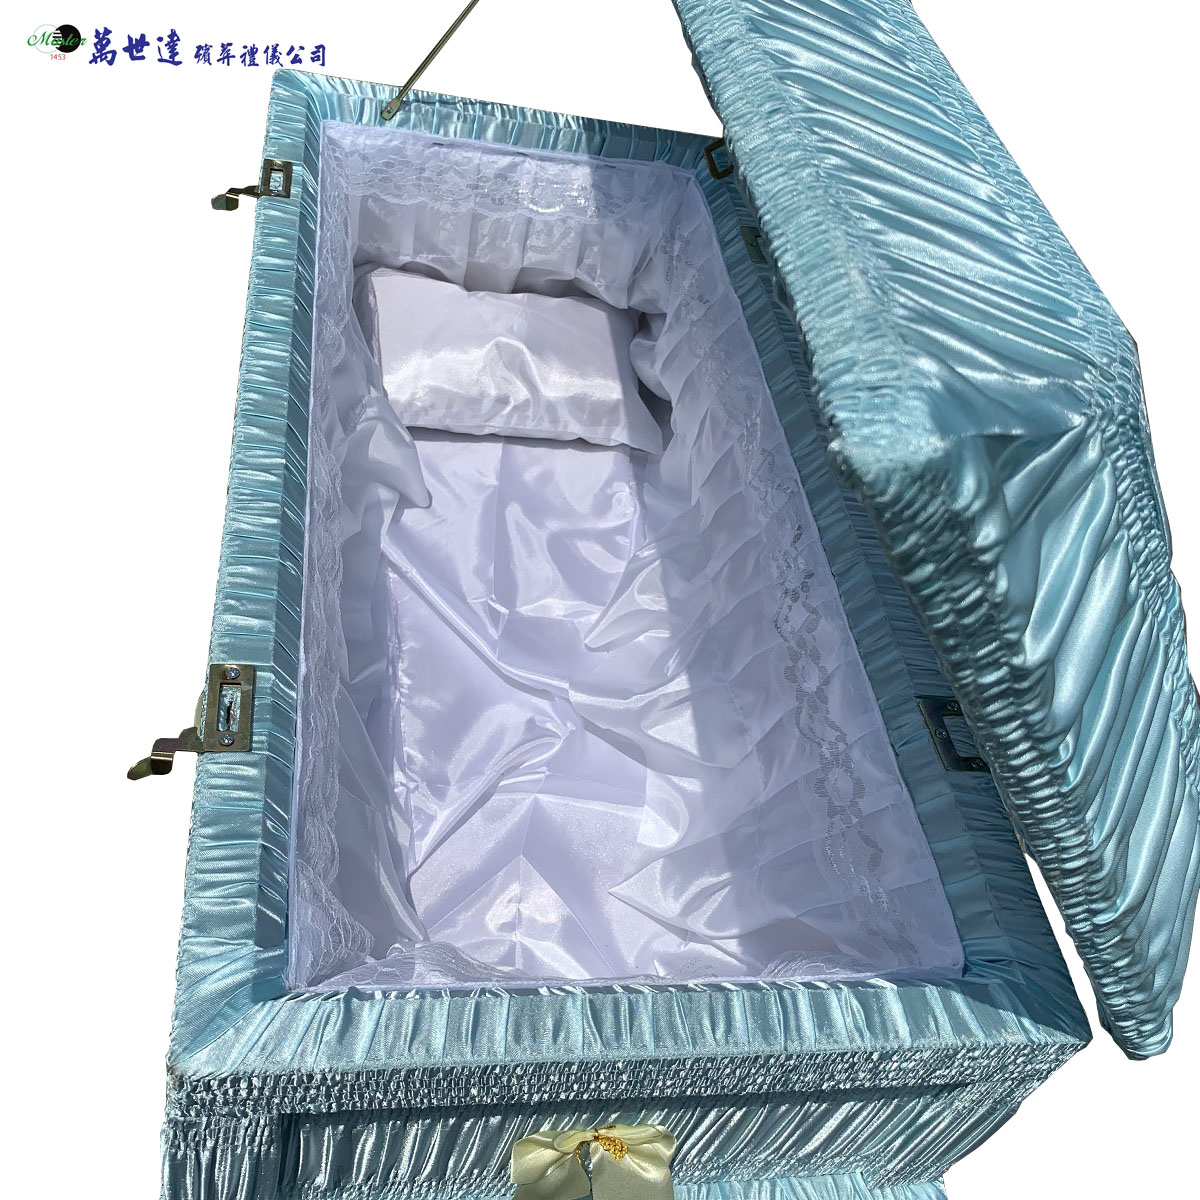 藍色天使棺3尺(90公分)